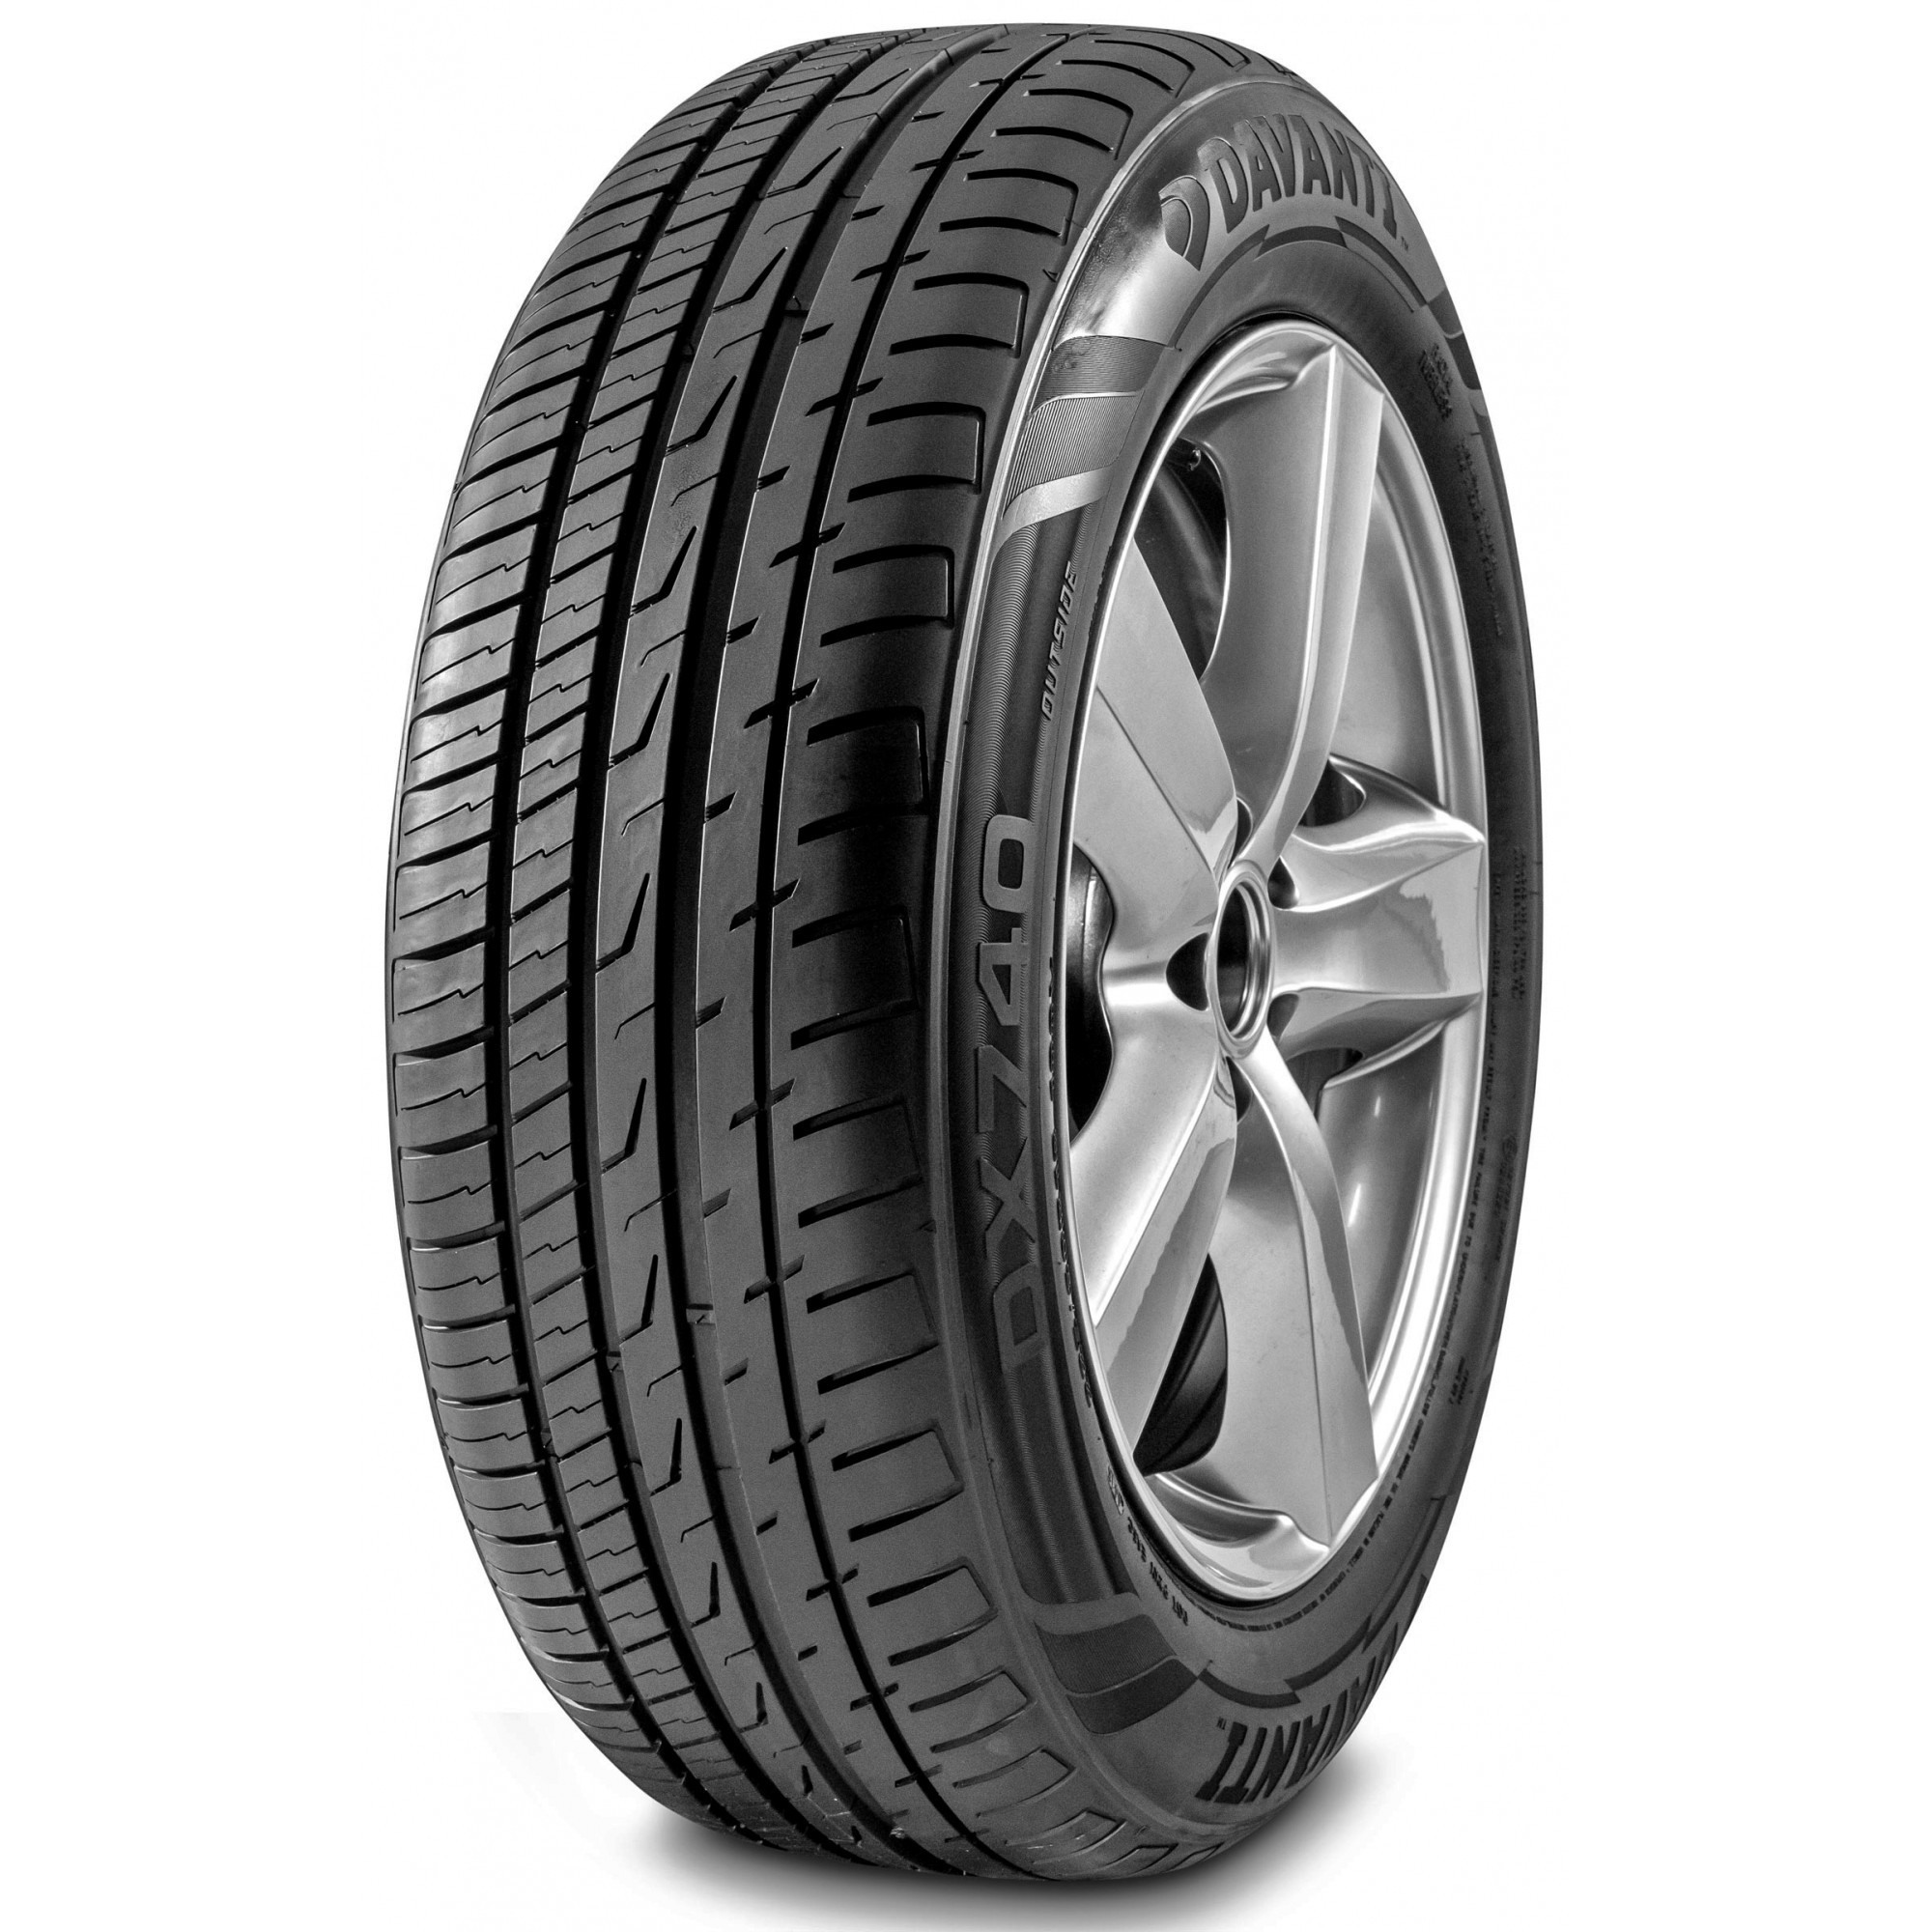 Davanti Tyres DX 740 (225/65R17 106V) - зображення 1